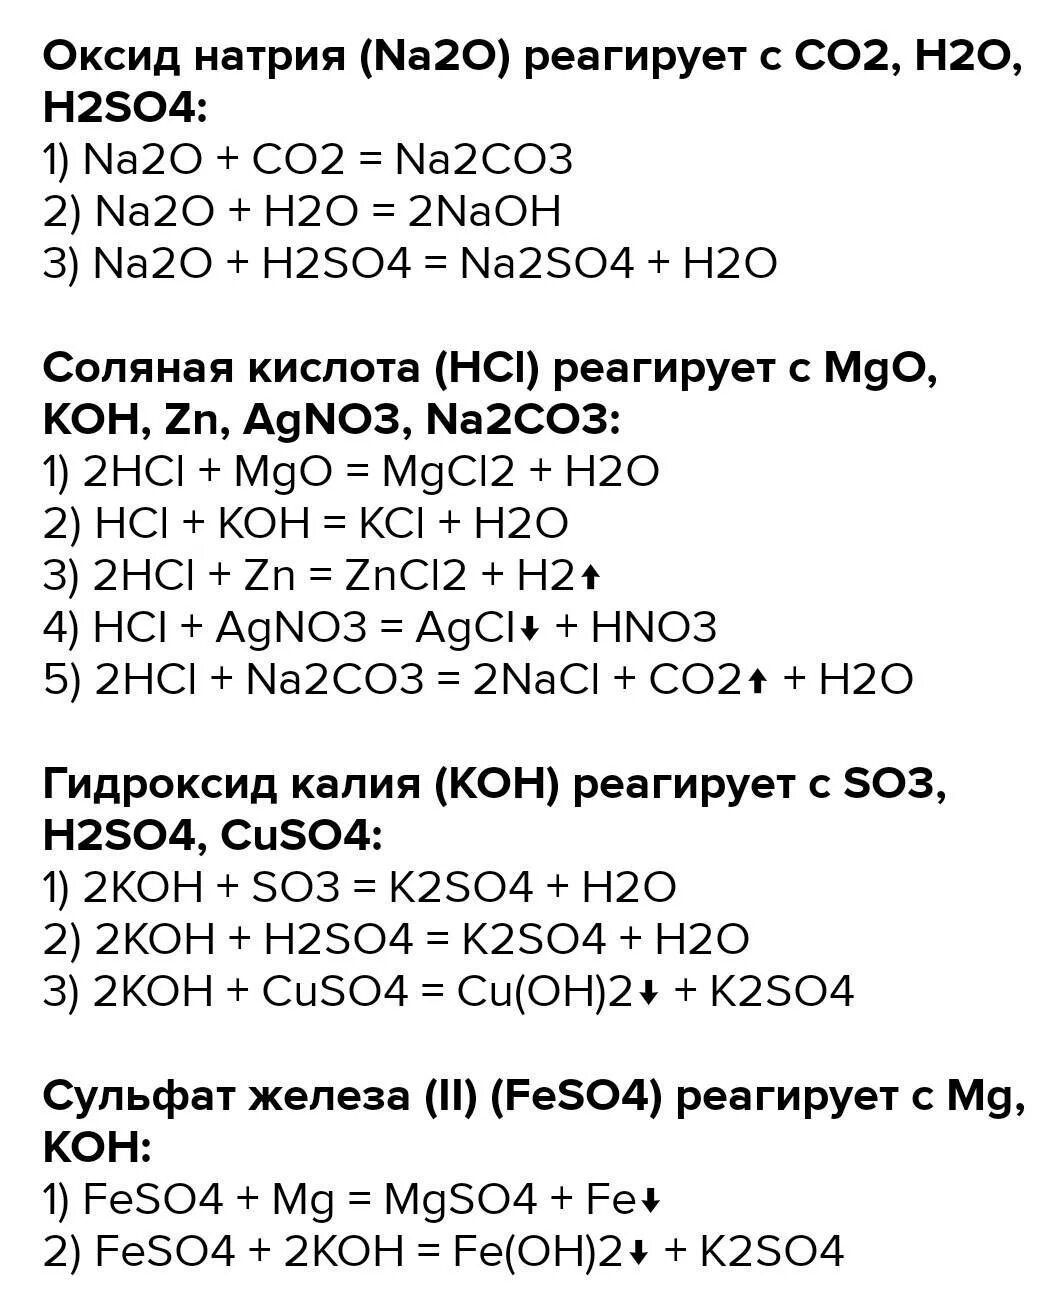 Реакция h2s+na. K+h2so4 уравнение химической реакции. Na2co3 реакция. Koh уравнение реакции.